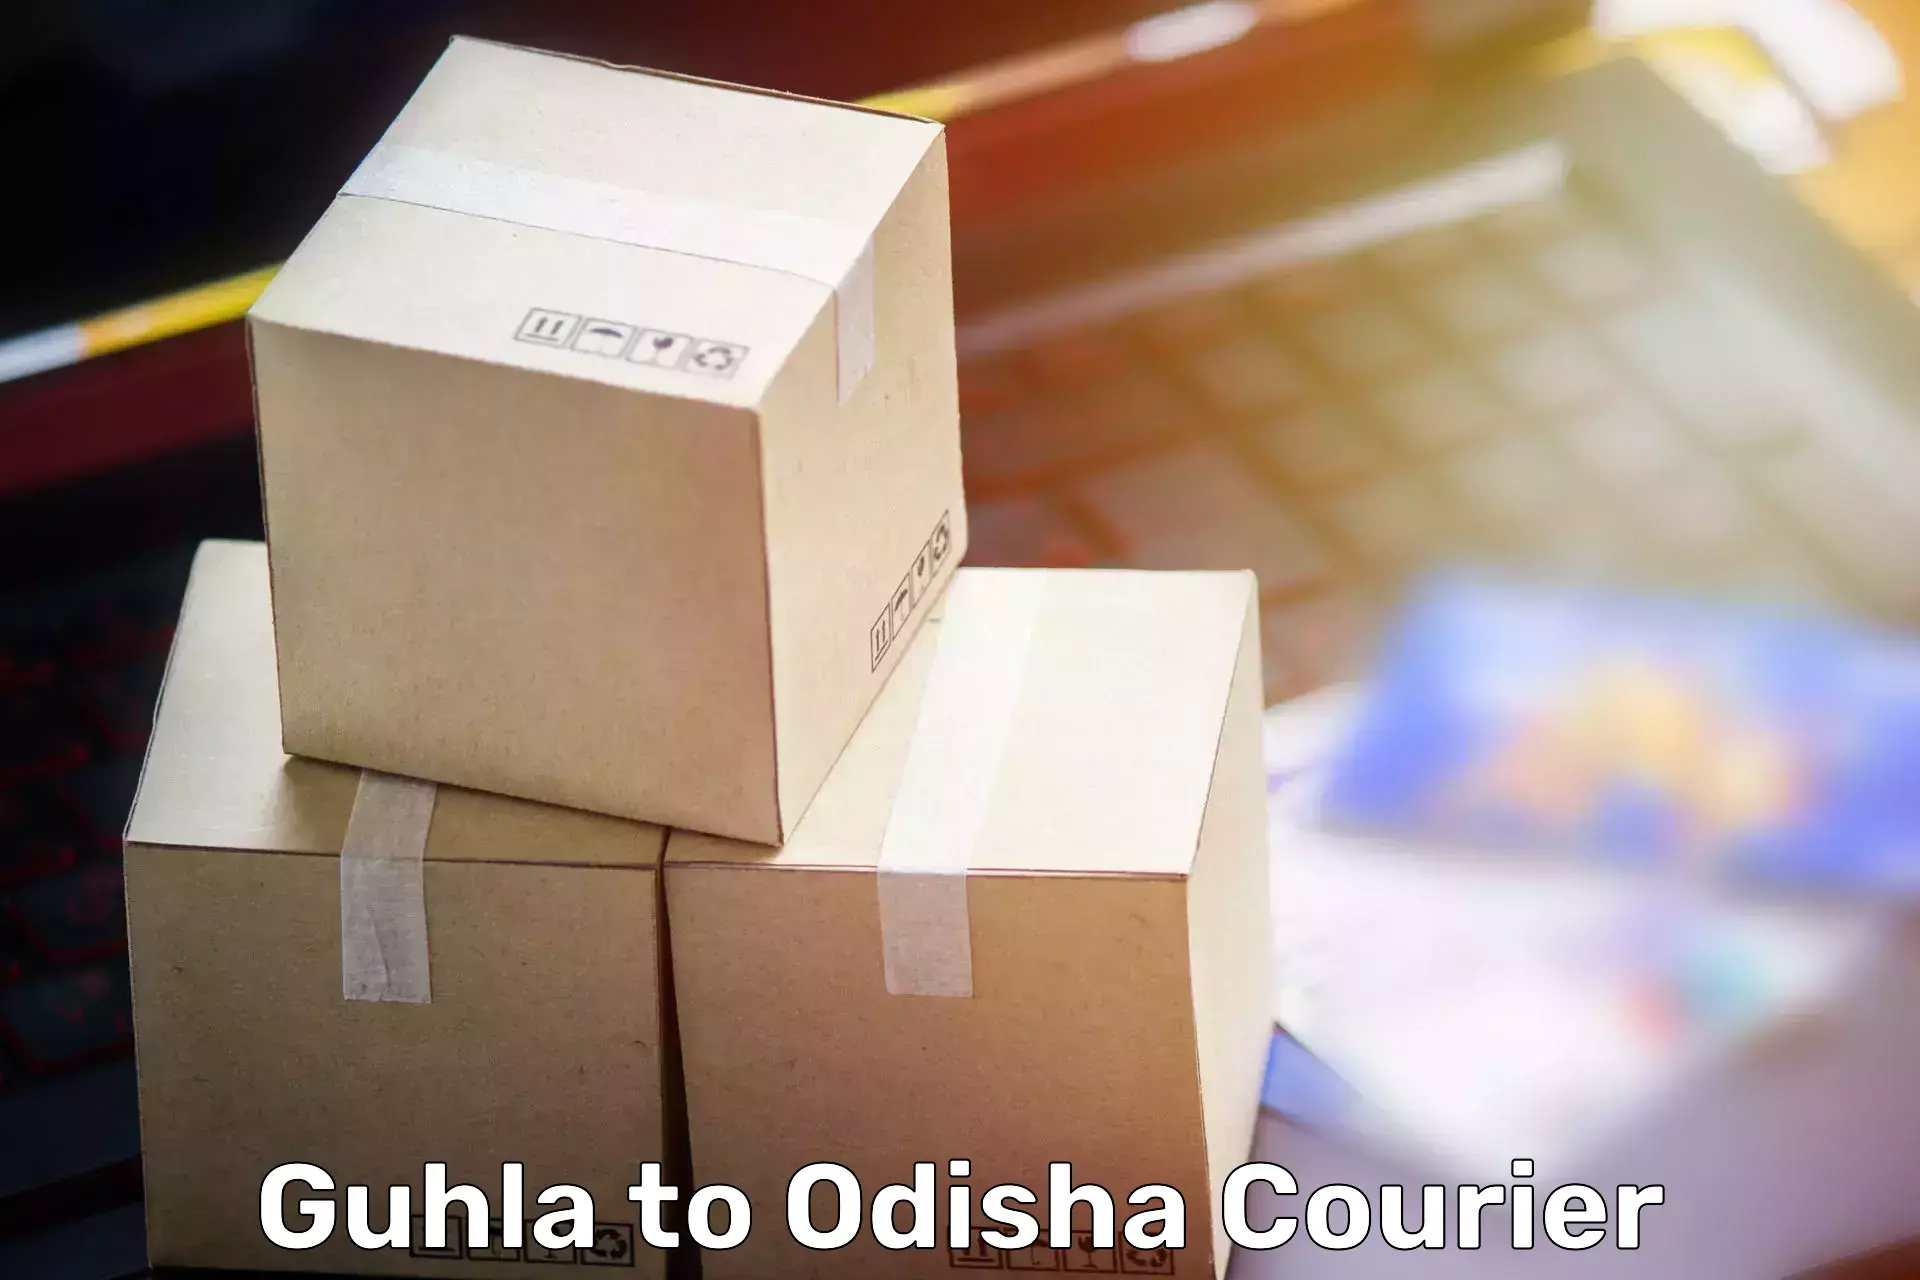 Door-to-door relocation services Guhla to Raruan